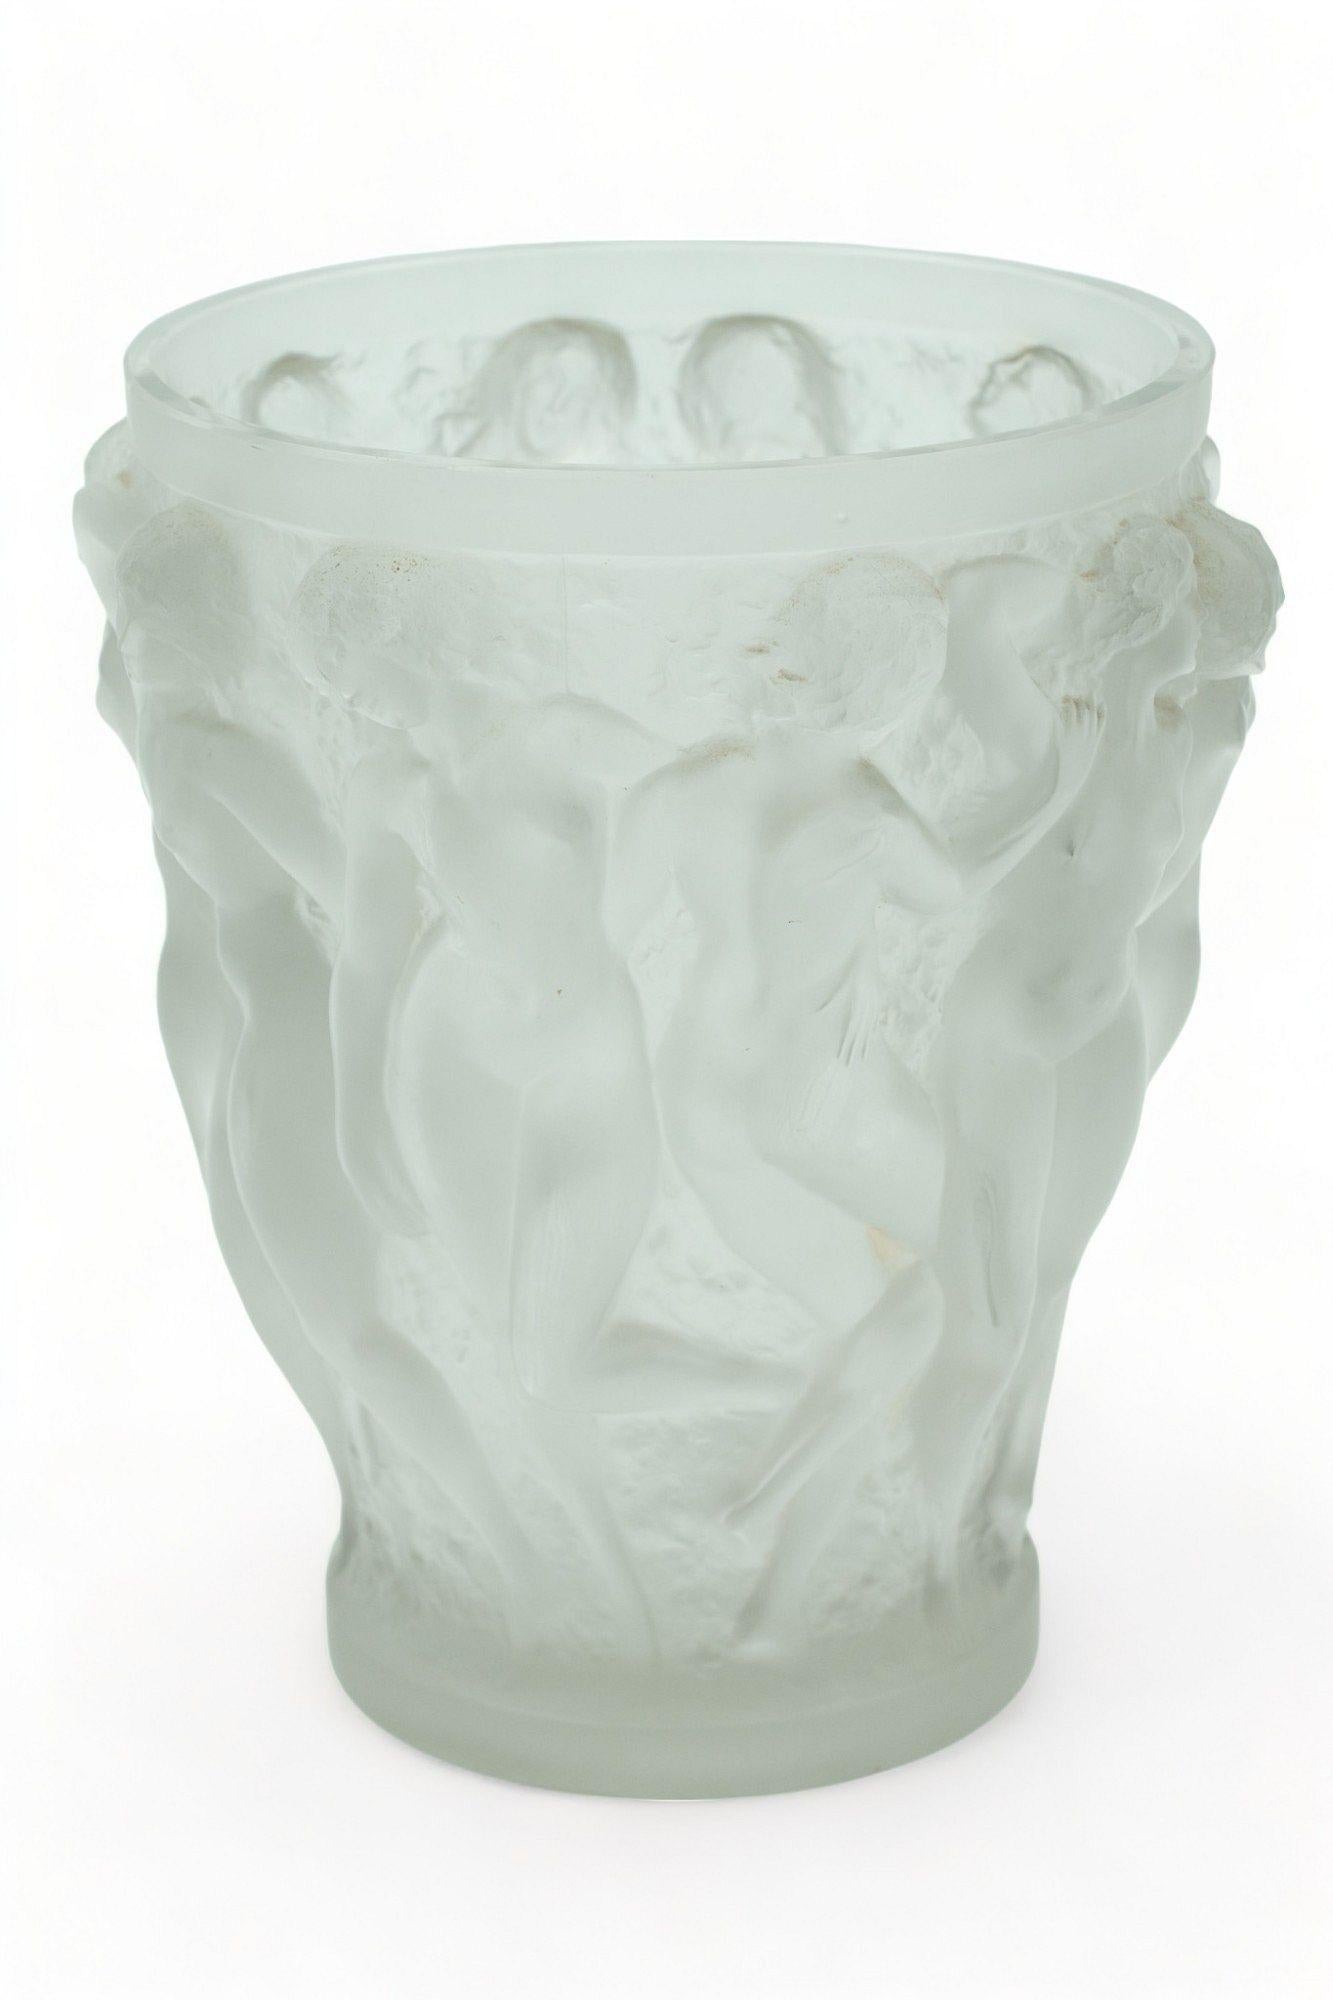 L'article suivant que nous vous proposons est un Rare Important Grand Vase Bacchantes en Cristal Givré de René Lalique (Français (1860-1945) donnant une teinte gris clair. Signé sur le dessous 